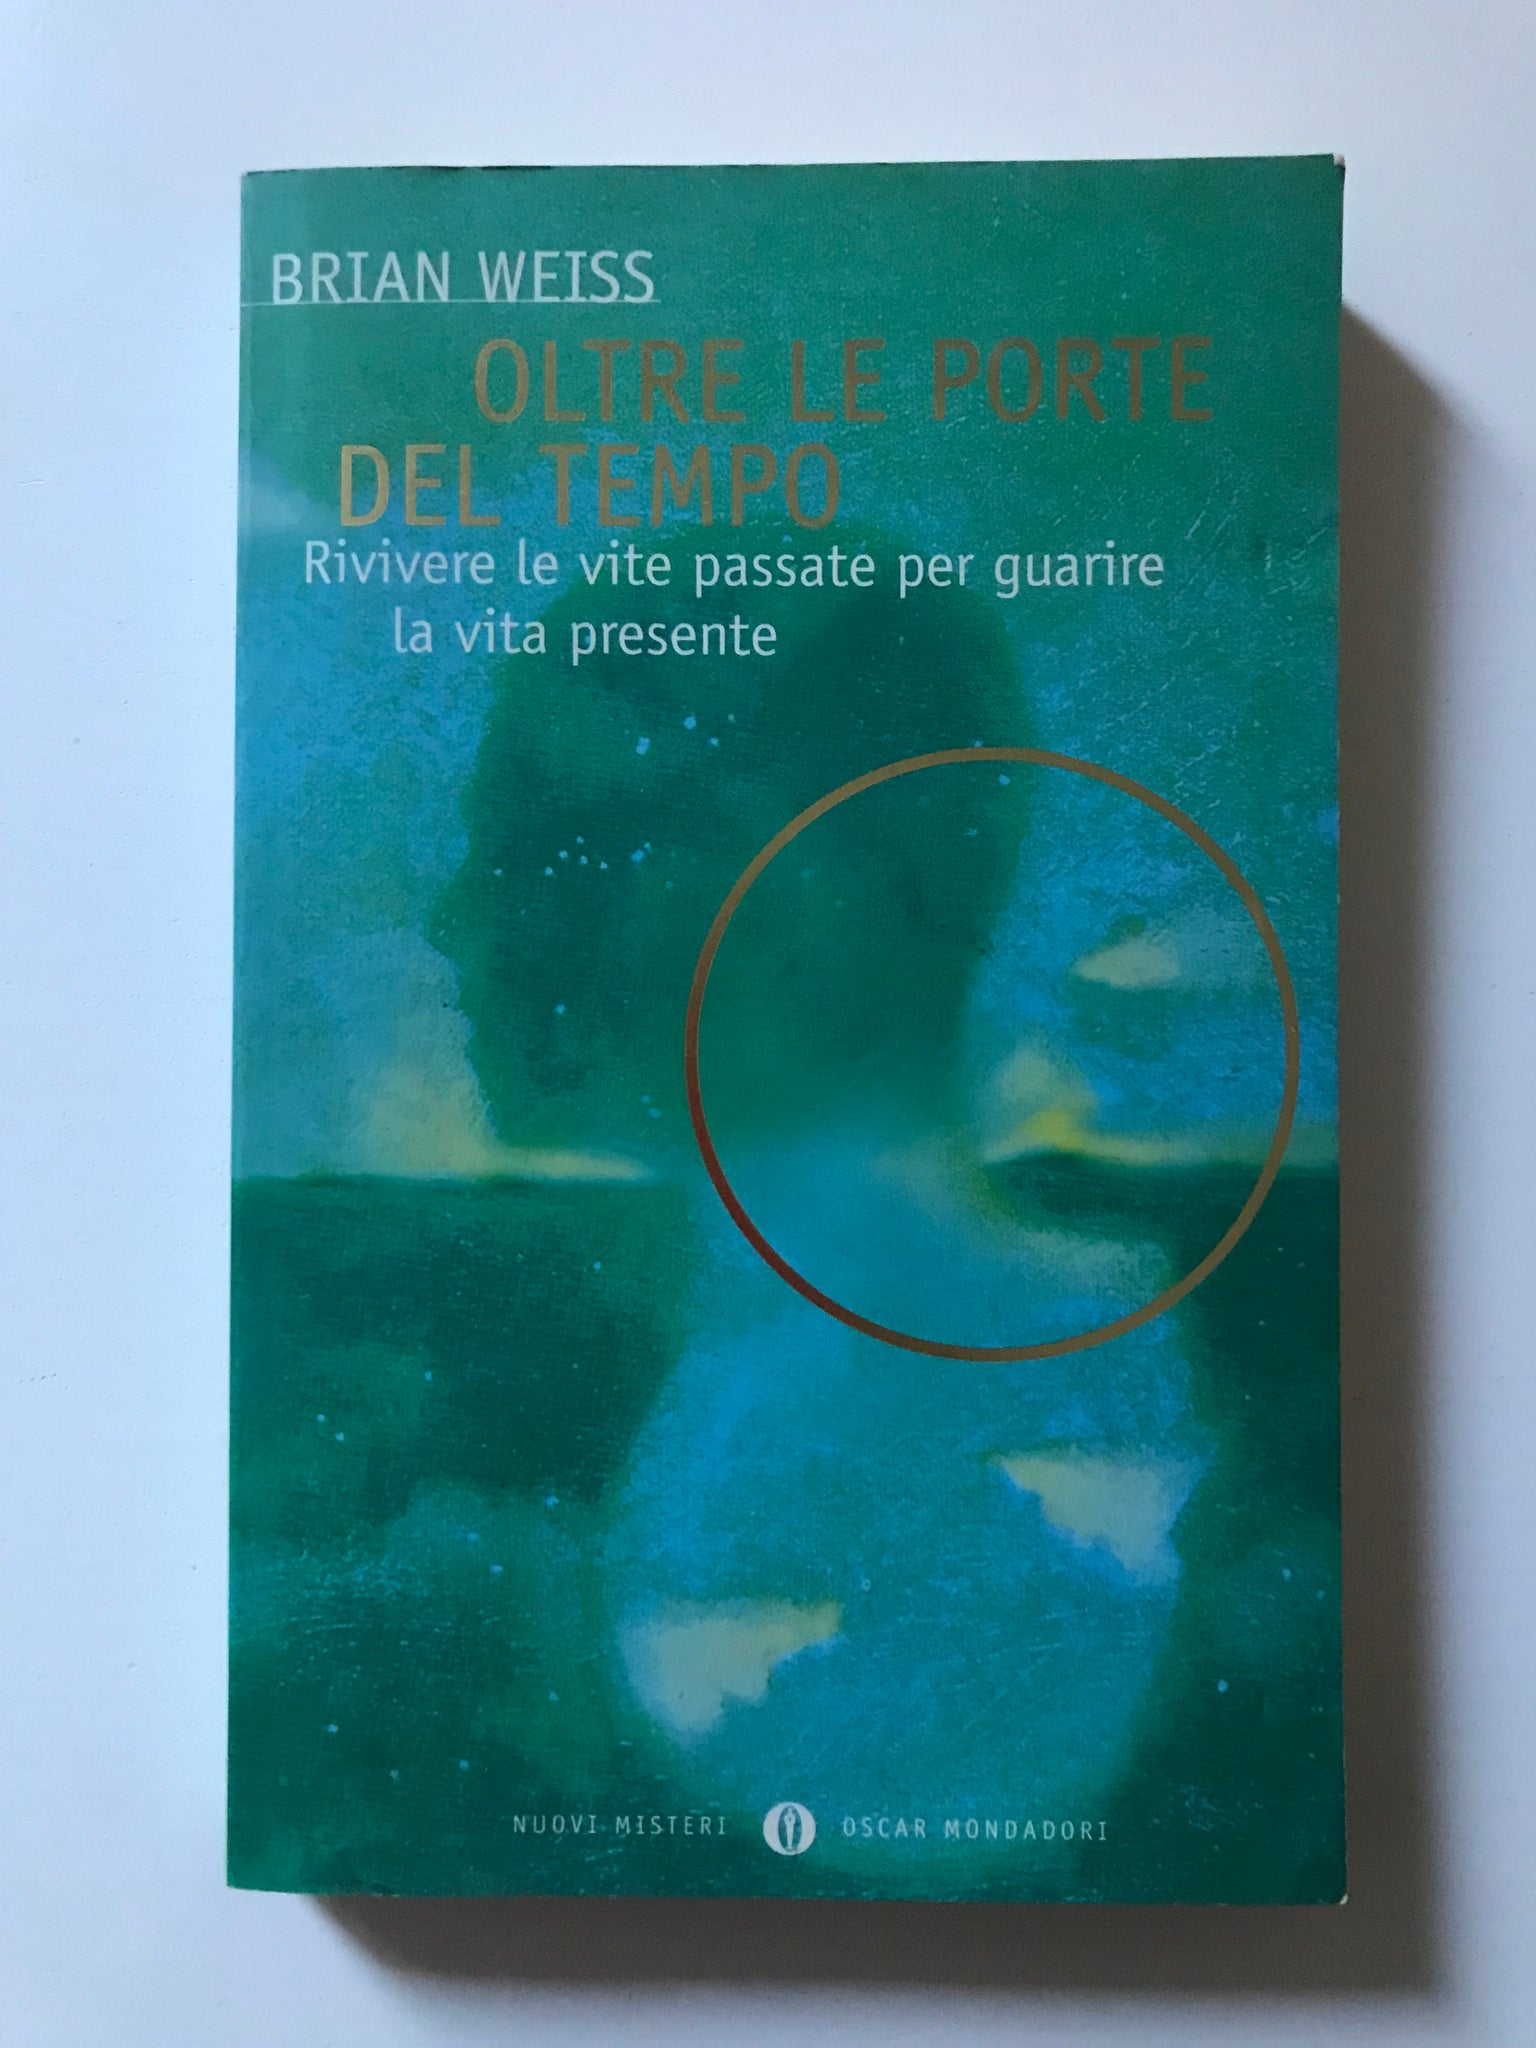 Brian Weiss - Oltre le porte del tempo Rivivere le vite passate per guarire la vita presente